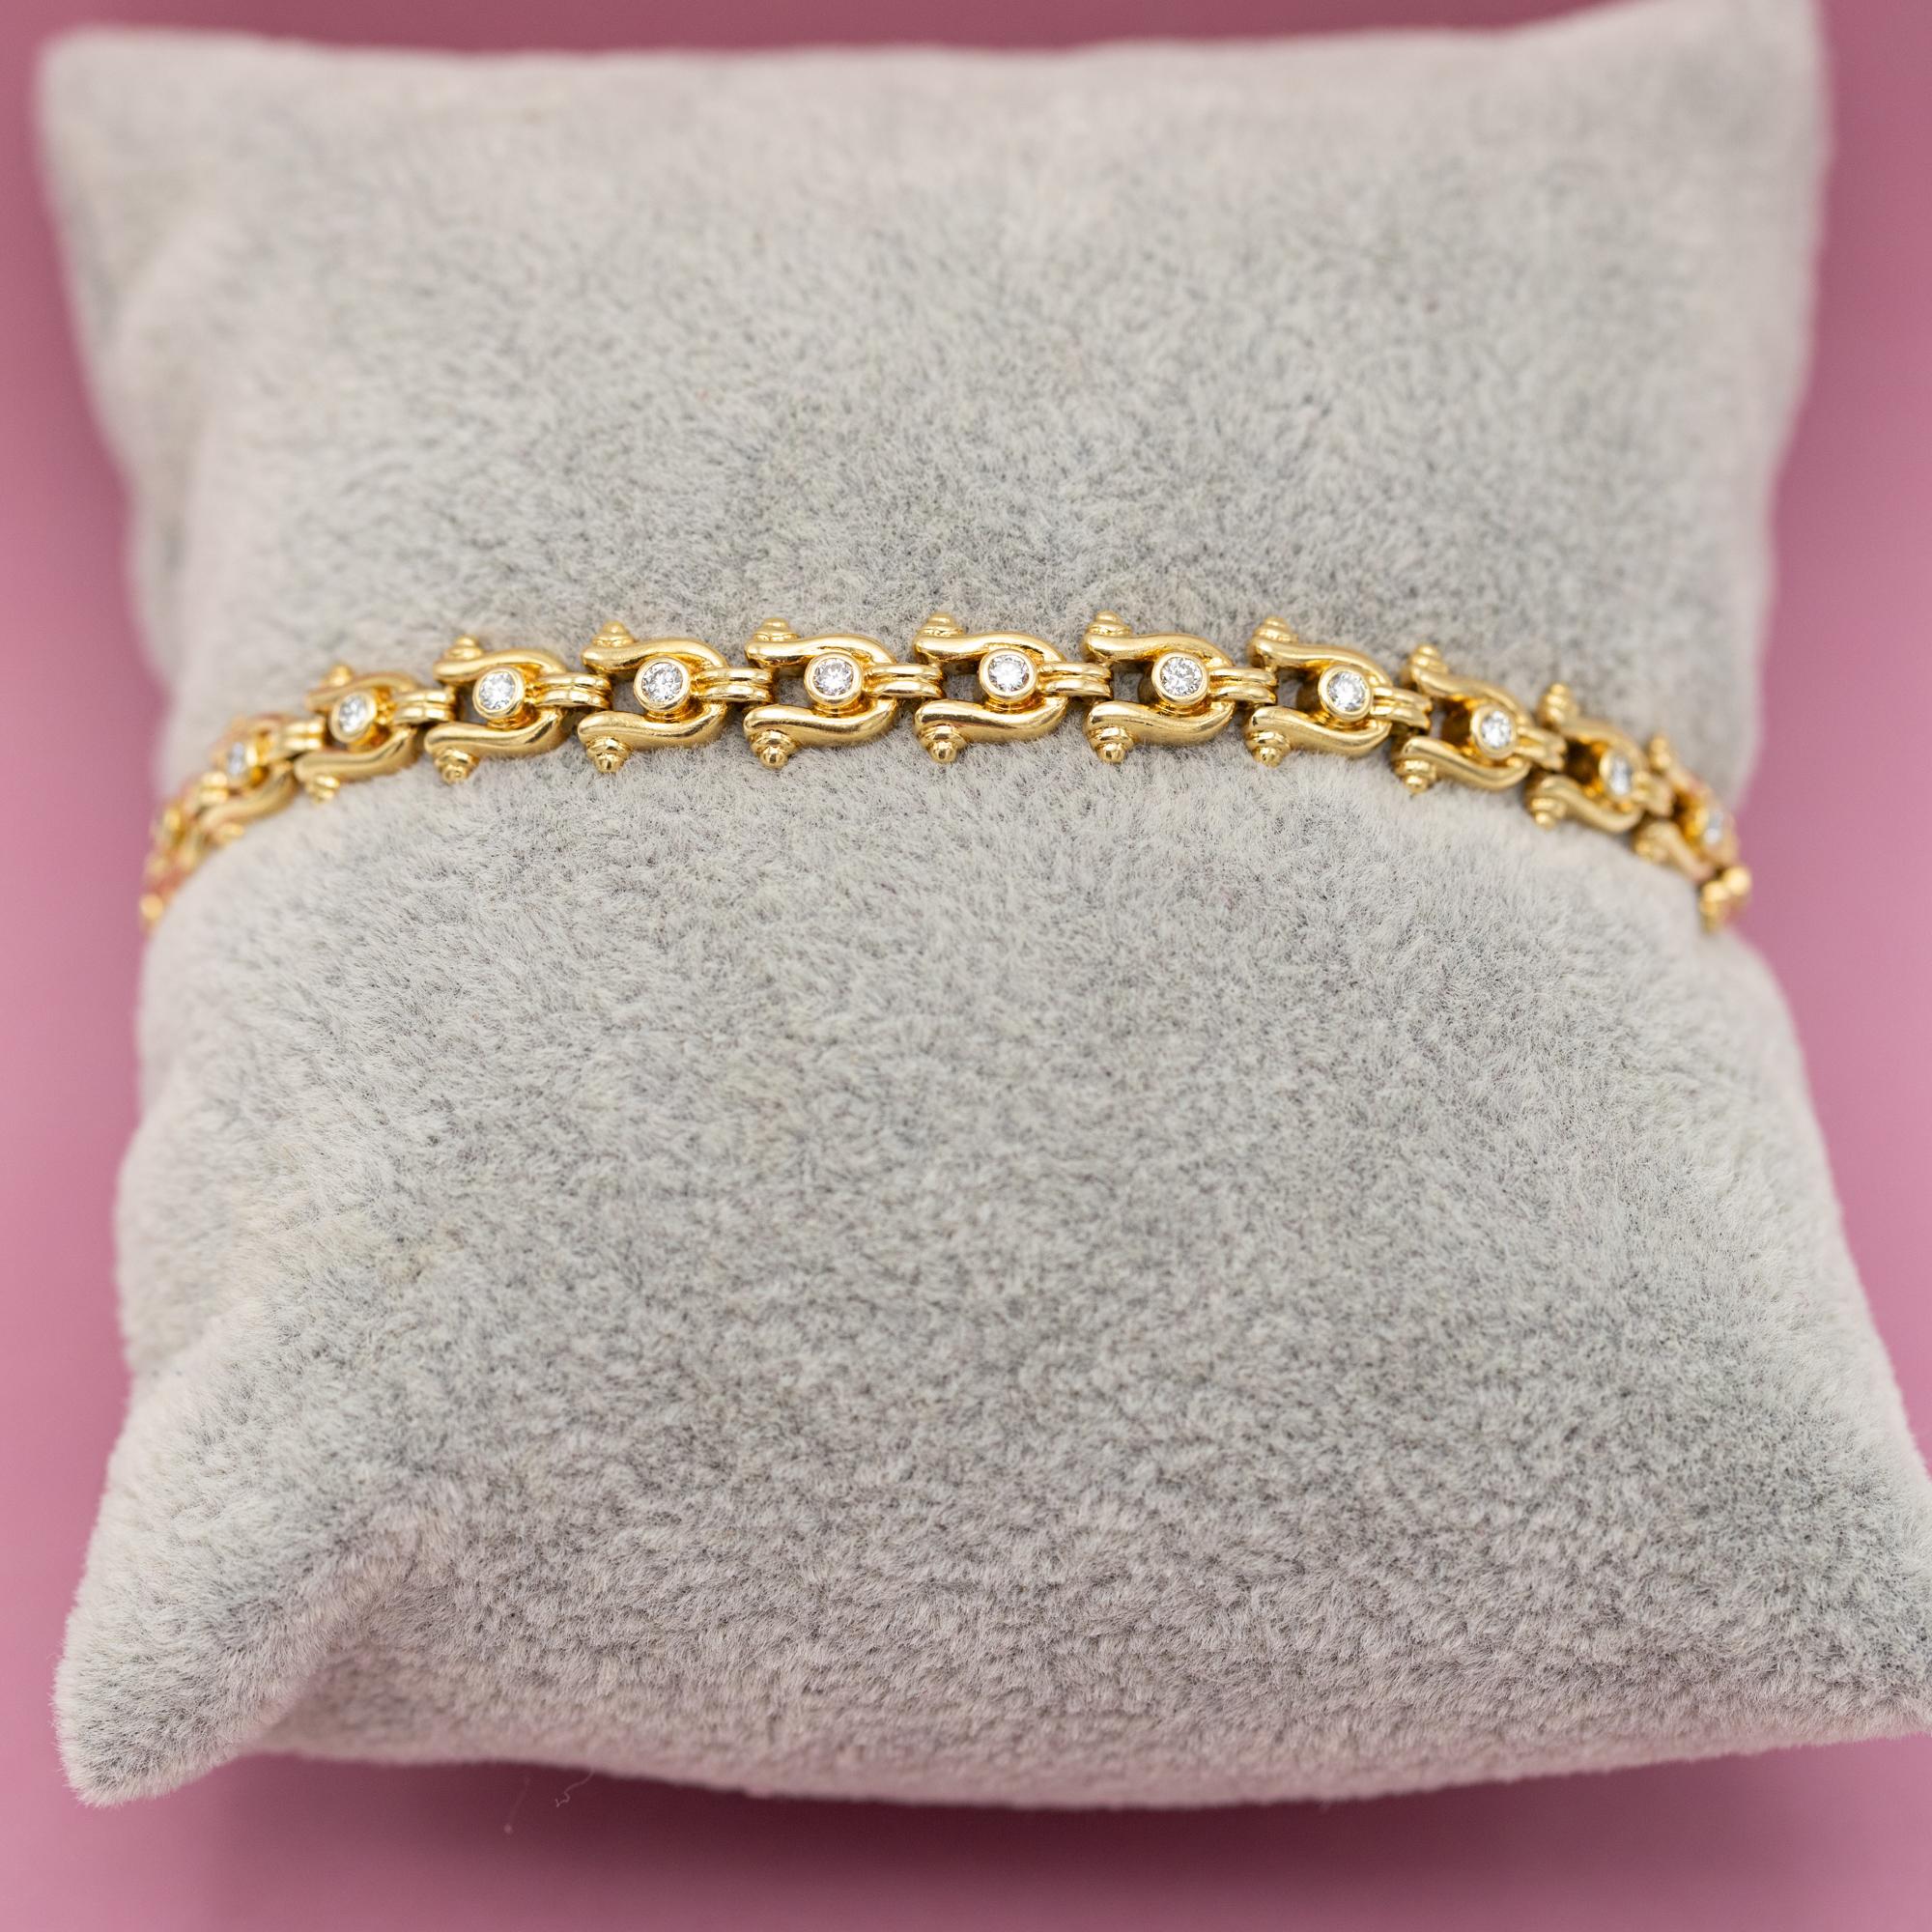 Bracelet tennis vintage en or jaune - Chaussures de cheval - 12,5 g - 0,62 carat de diamants 3